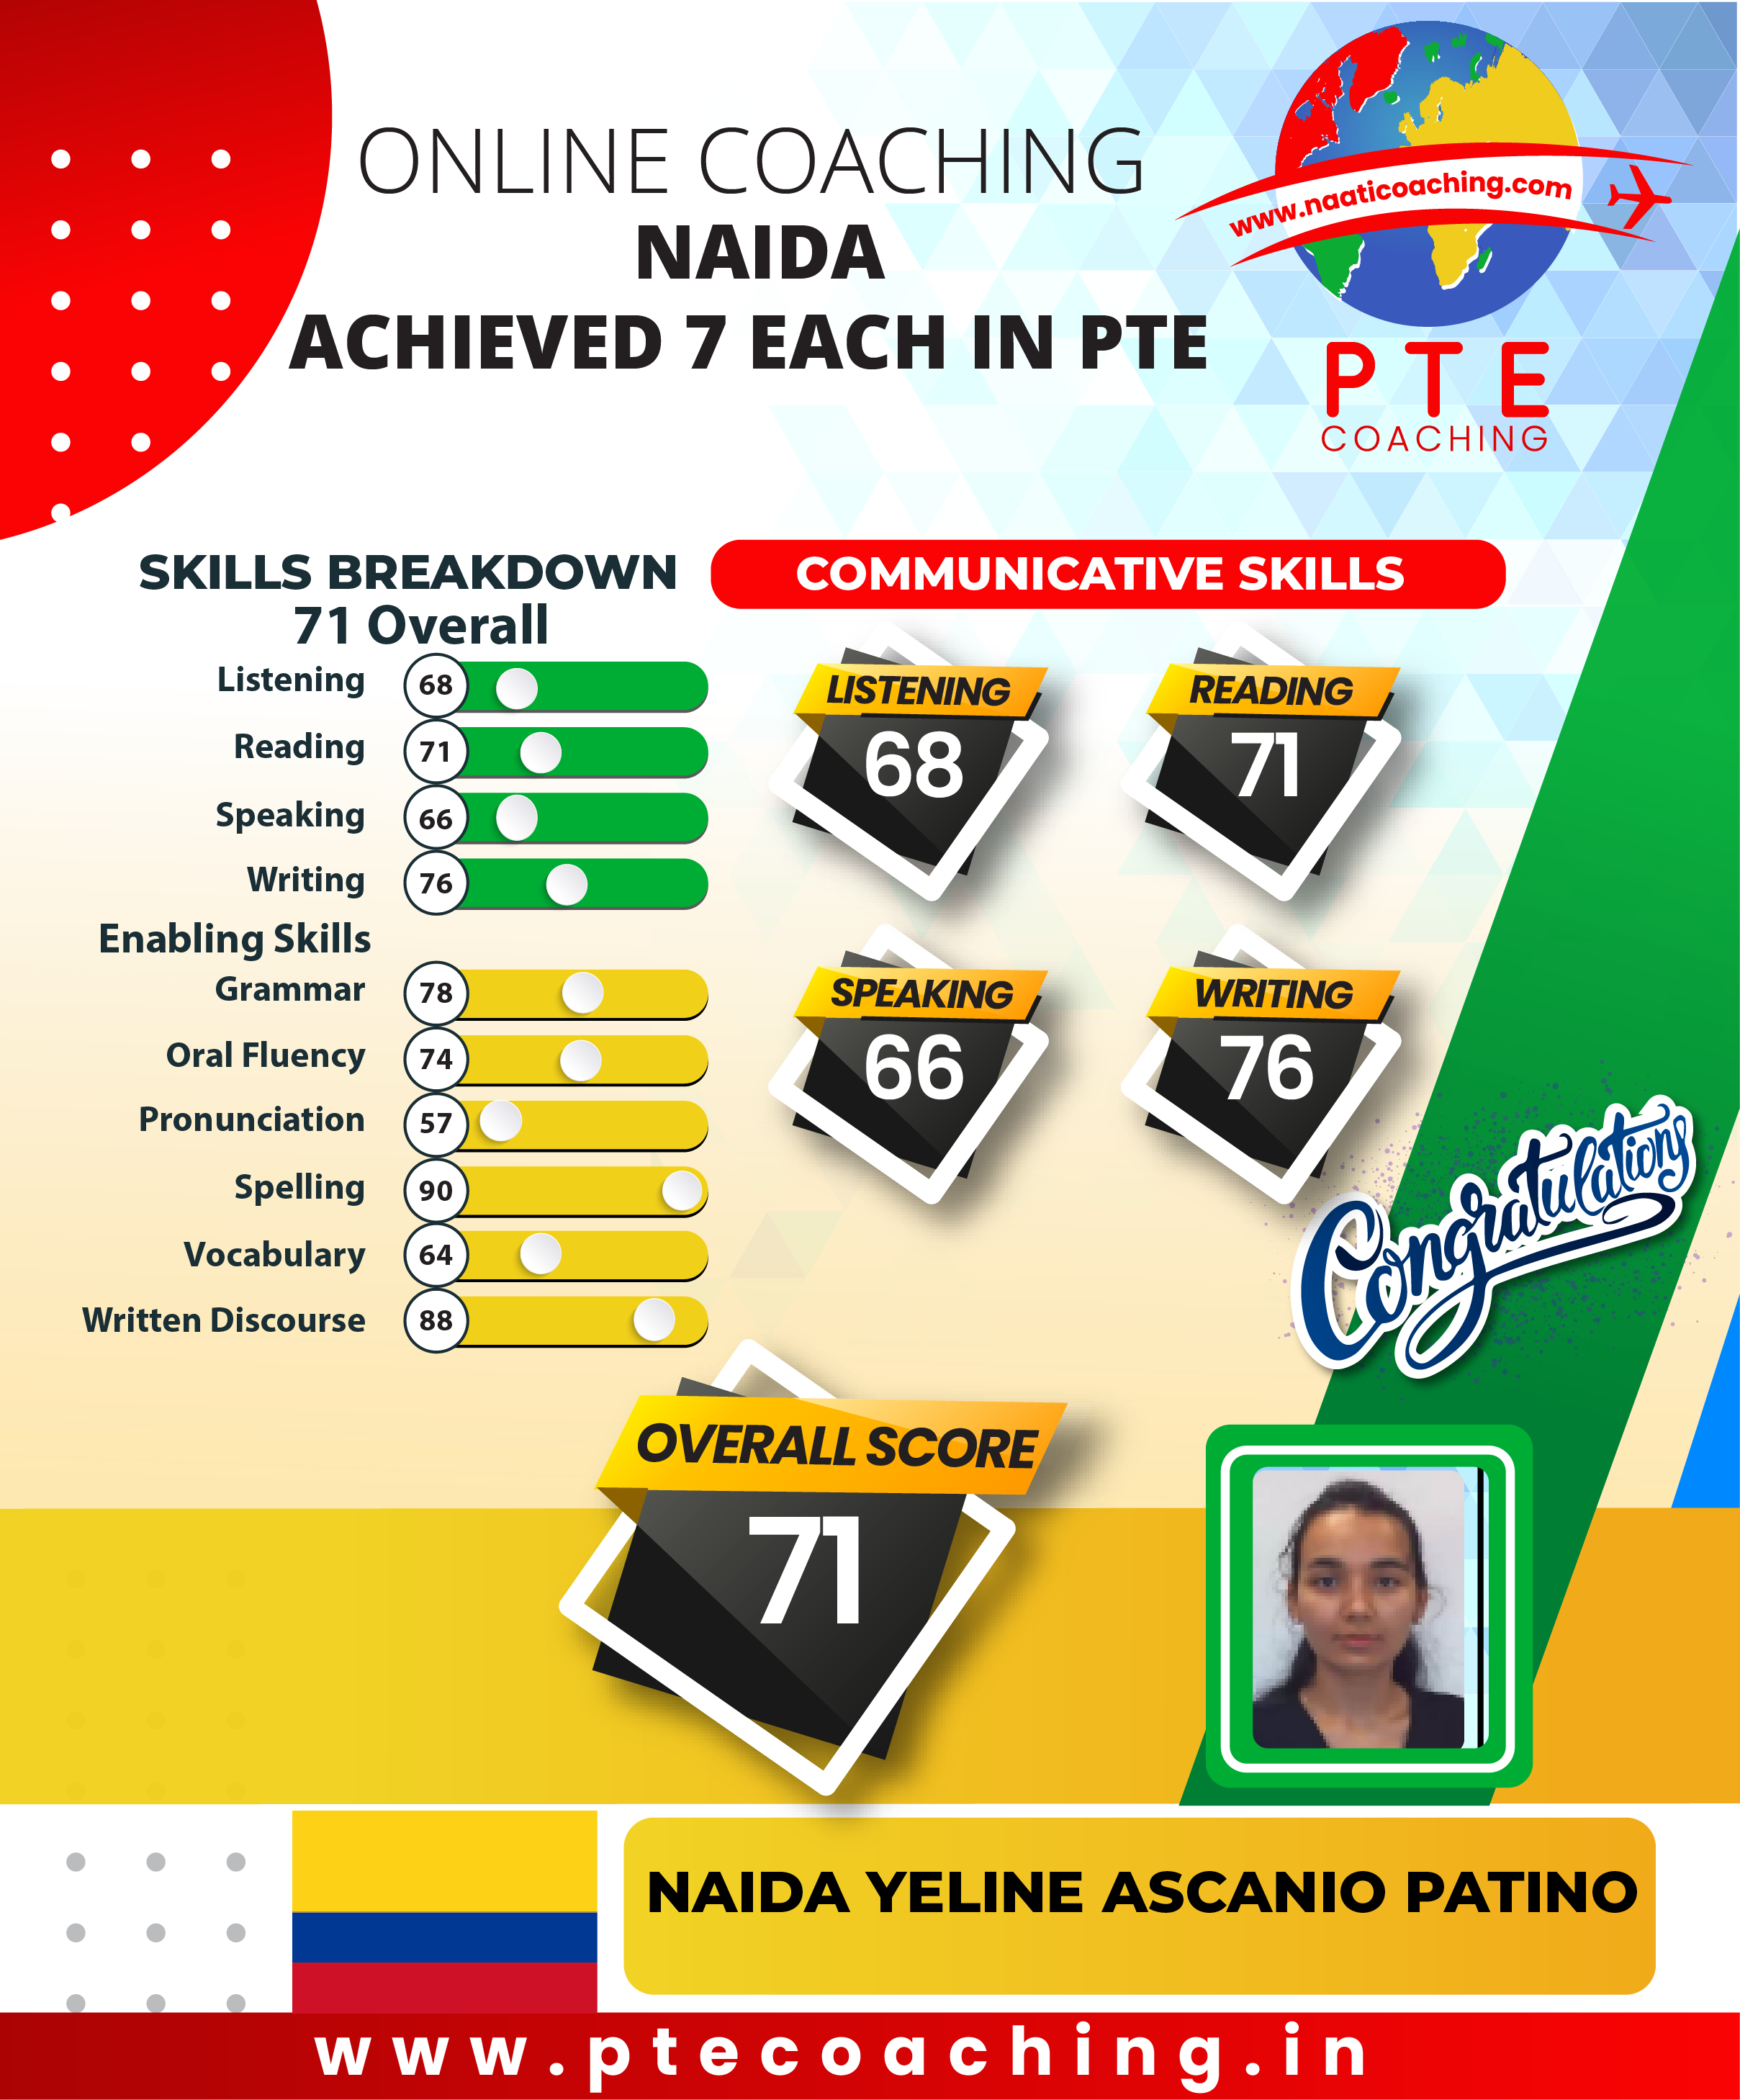 PTE Coaching Scorecard - Naida achieved 7 each in PTE